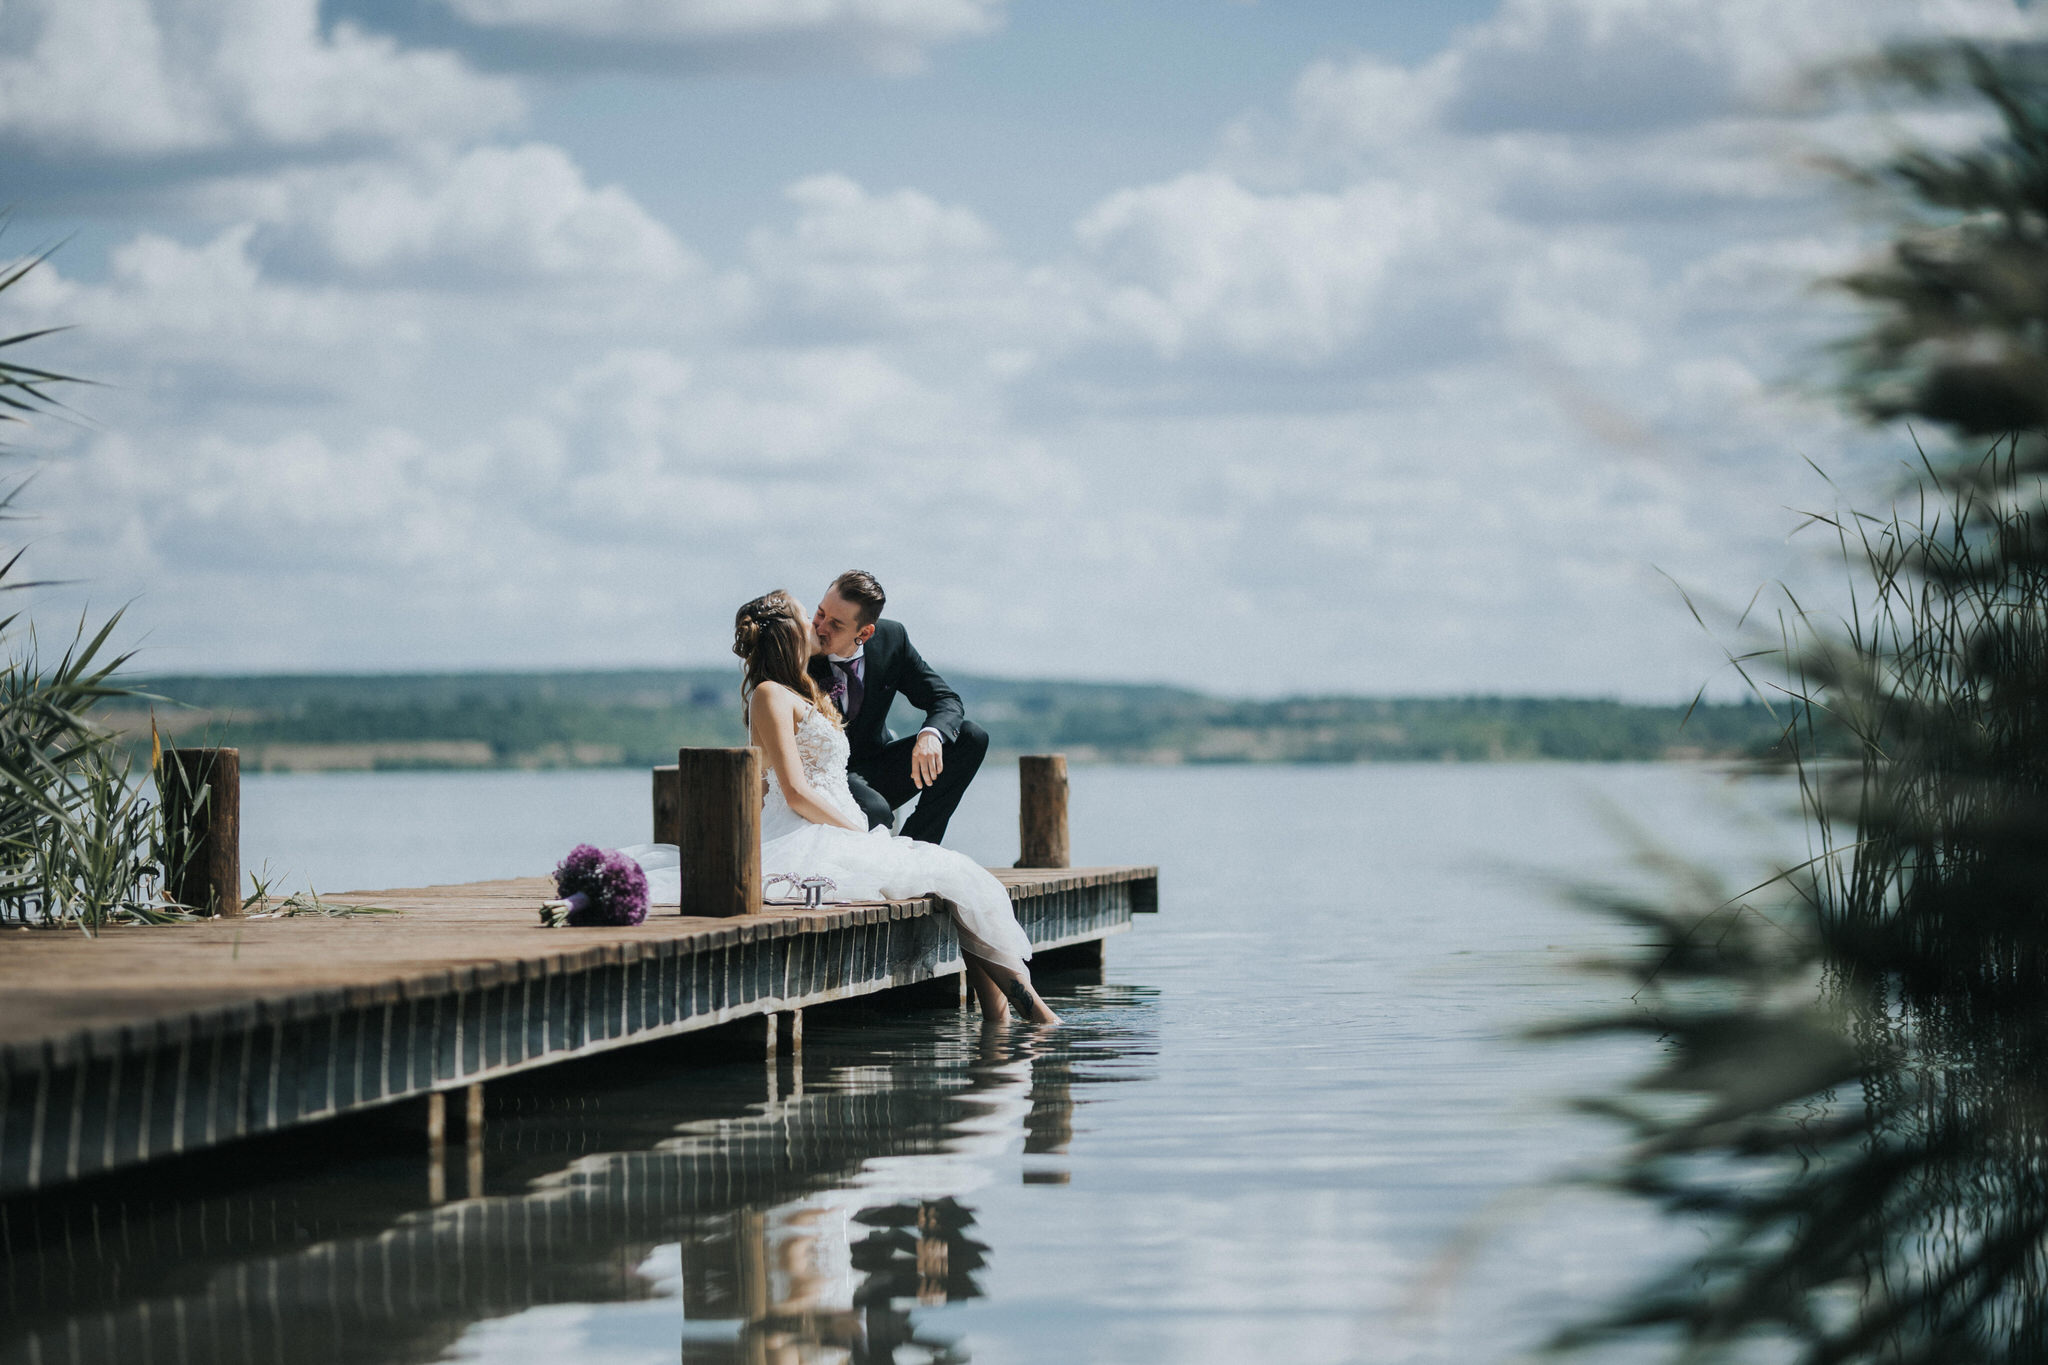 Idyllisches Brautpaarfotoshooting am Seeufer – Die Liebe des Paares wird in romantischen Bildern eingefangen, während sie entlang des Ufers spazieren und den Zauber des Augenblicks erleben.